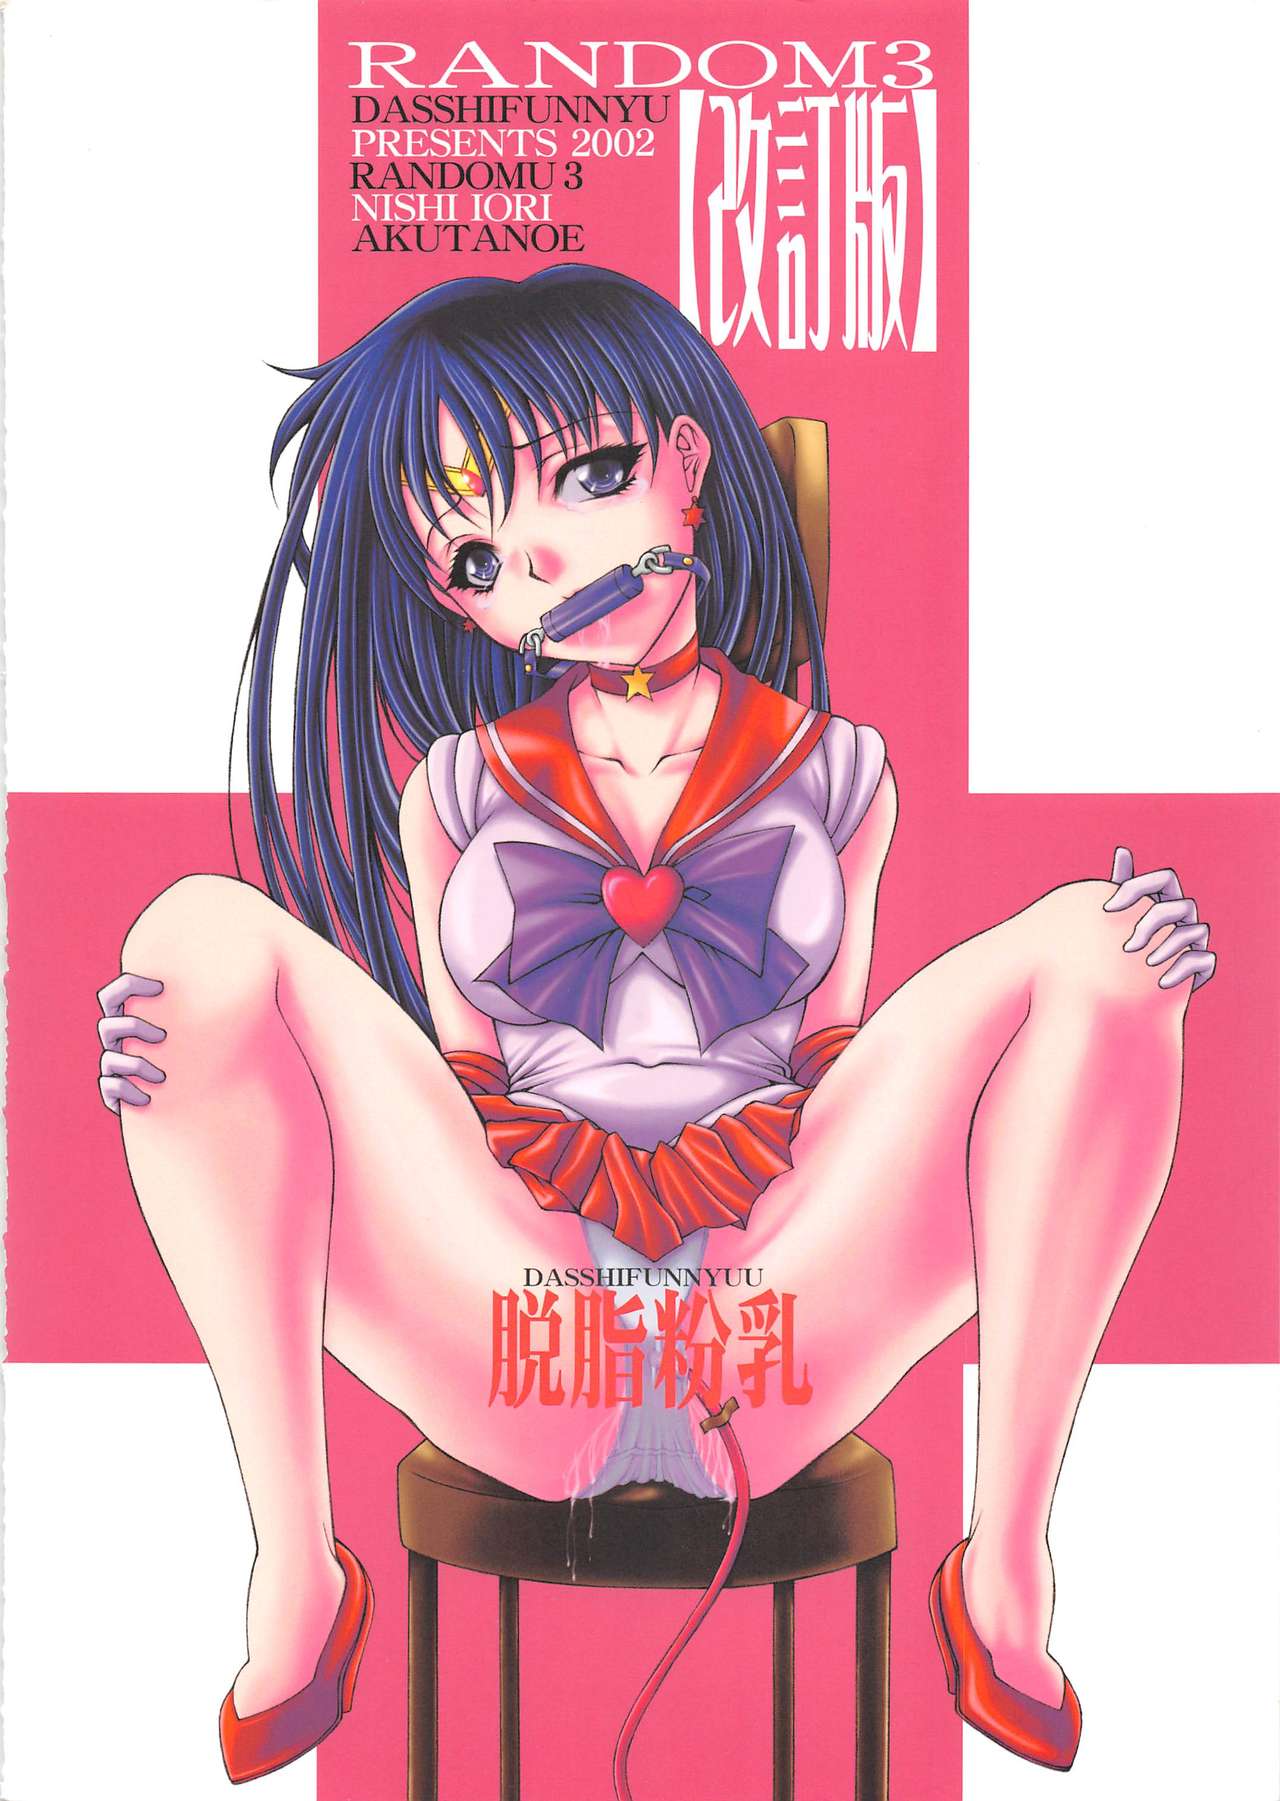 [Dasshifunnyuu (Nishi Iori, Akuta Noe)] Random 3 Kaiteiban (Abenobashi Mahou Shoutengai, Kasumin, Sailor Moon) page 52 full